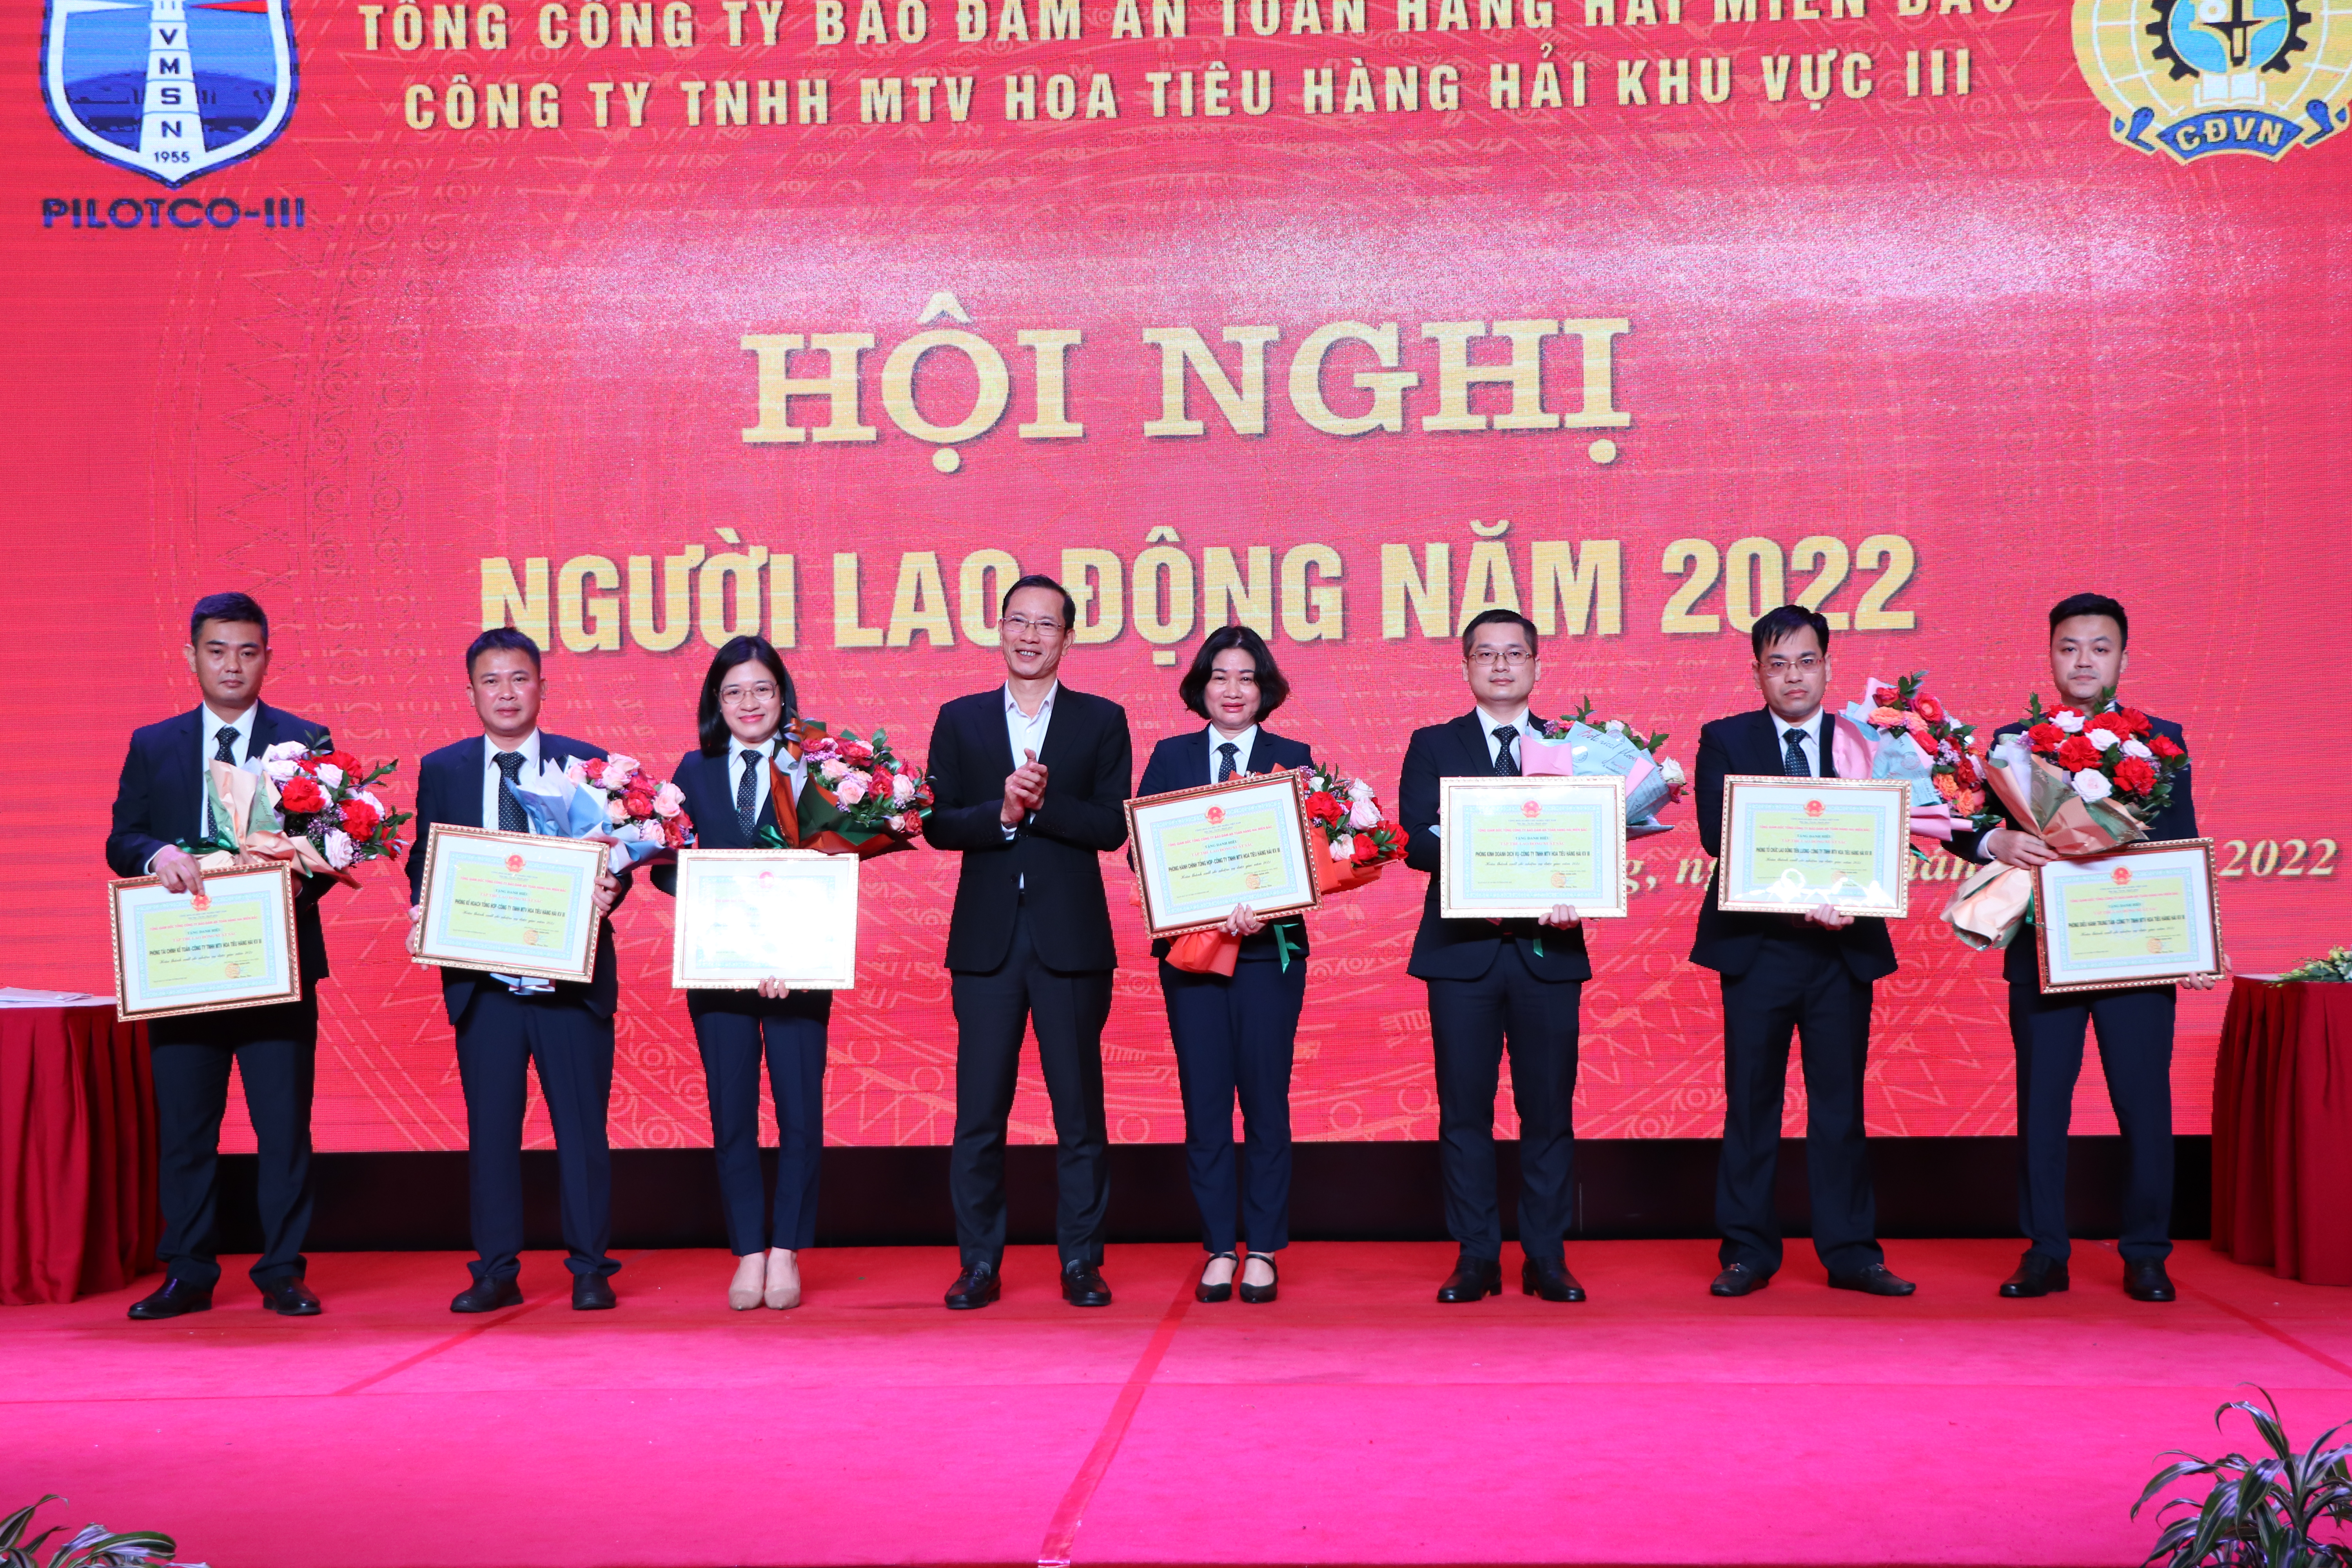 Công ty TNHH MTV Hoa tiêu hàng hải khu vực III tổ chức Hội nghị người lao động năm 2022